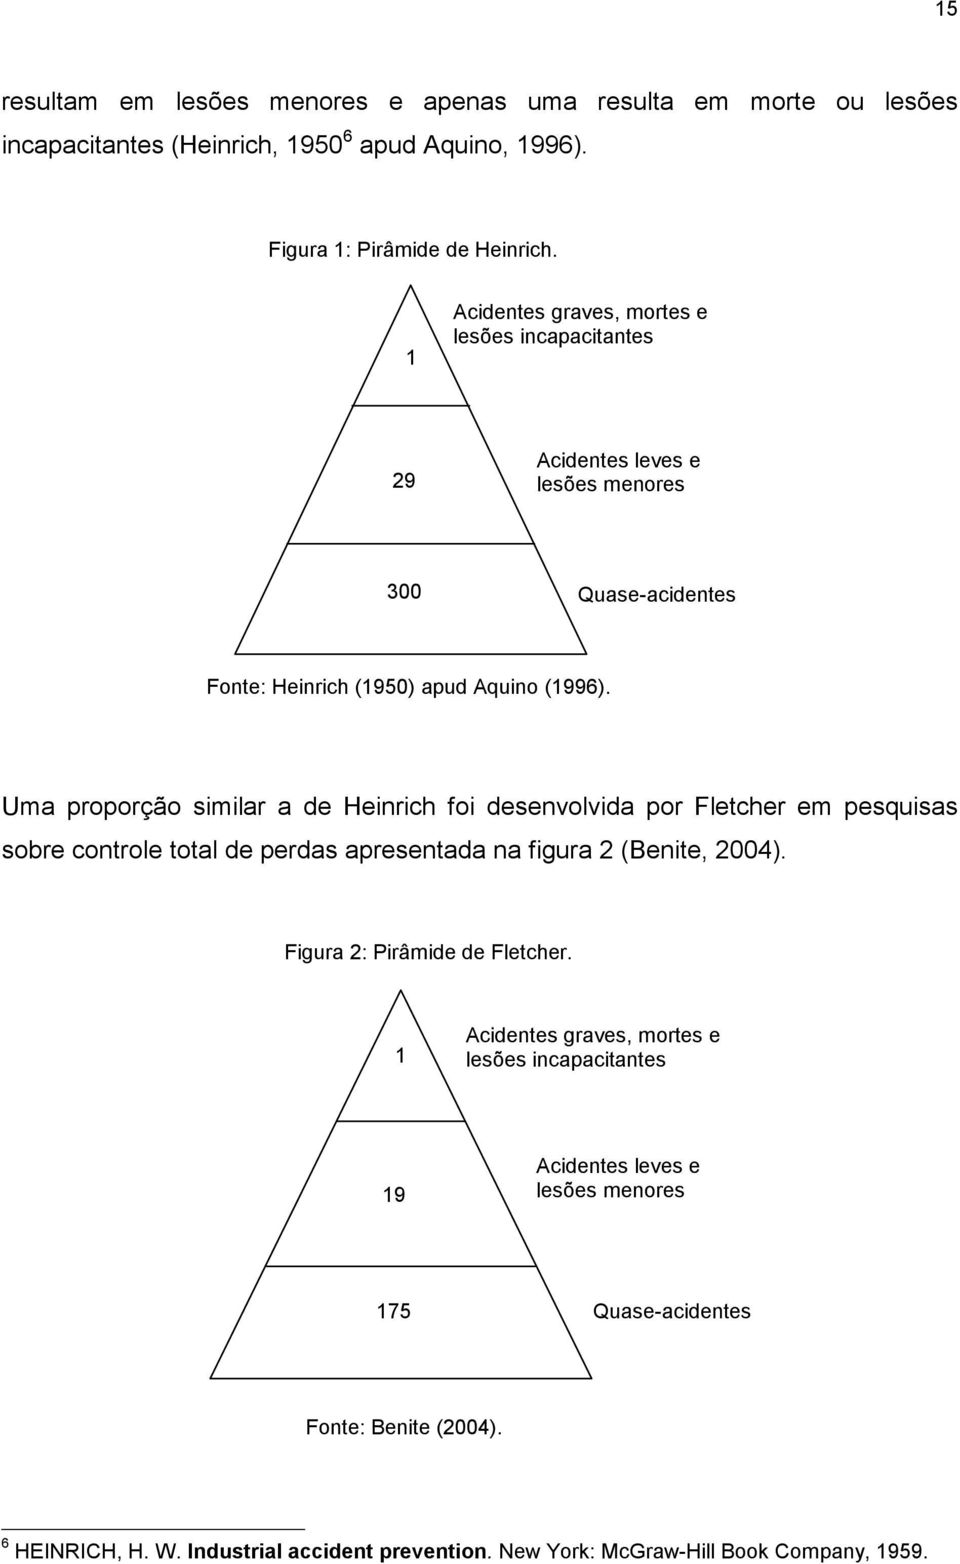 Uma proporção similar a de Heinrich foi desenvolvida por Fletcher em pesquisas sobre controle total de perdas apresentada na figura 2 (Benite, 2004).